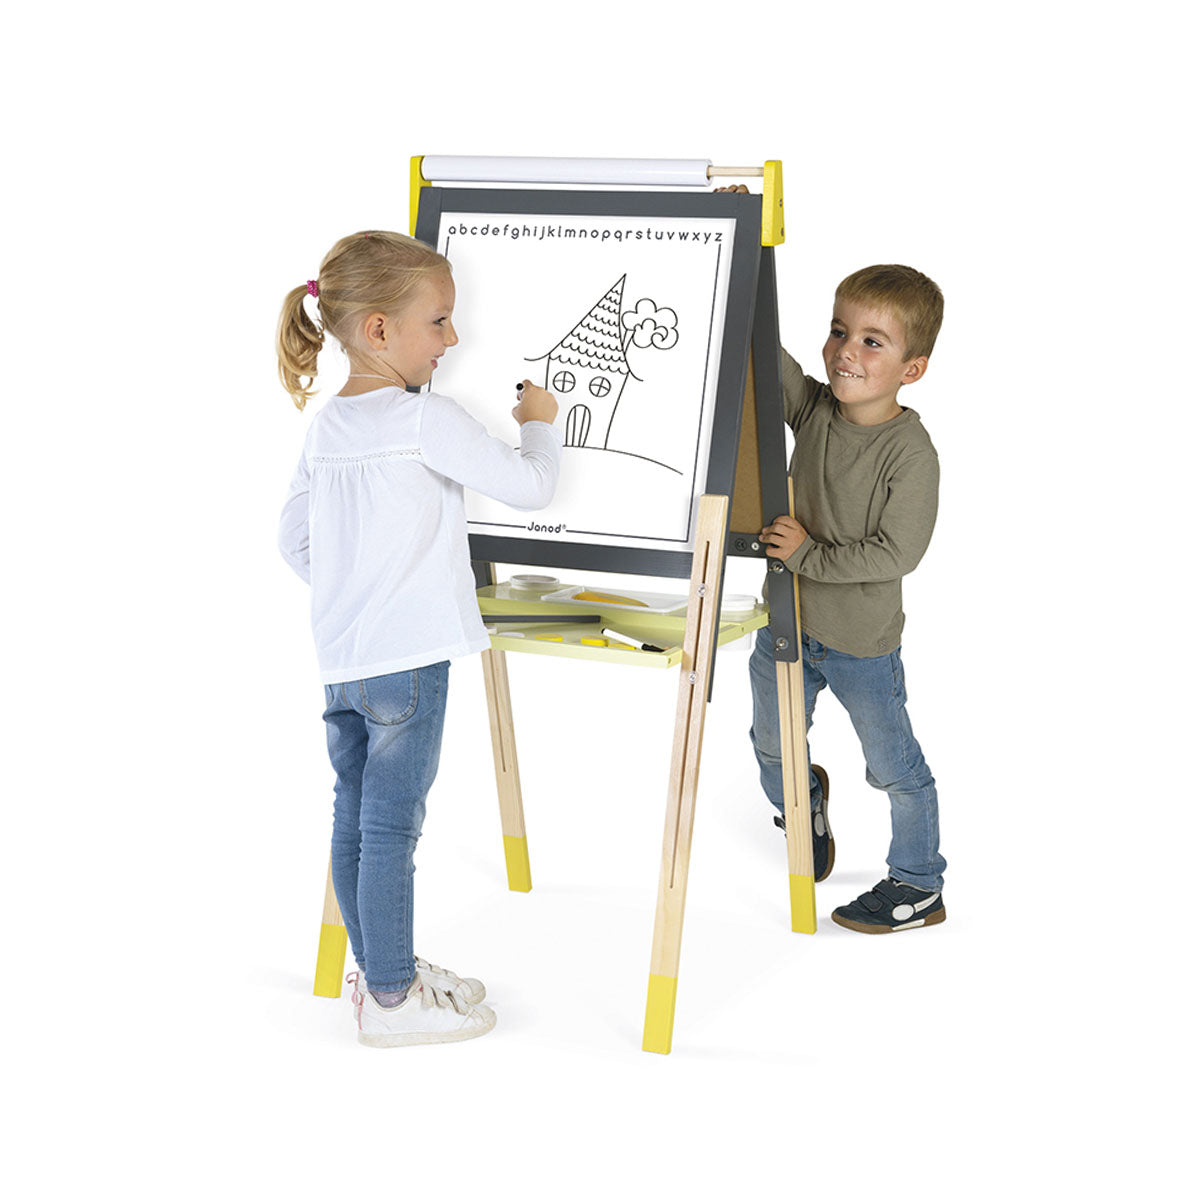 Dit schoolbord grijs/geel is het ideale accessoire voor op de kinderkamer. Je kan er op schrijven, tekenen en het bord als hulpmiddel gebruiken tijdens het maken van huiswerk! VanZus